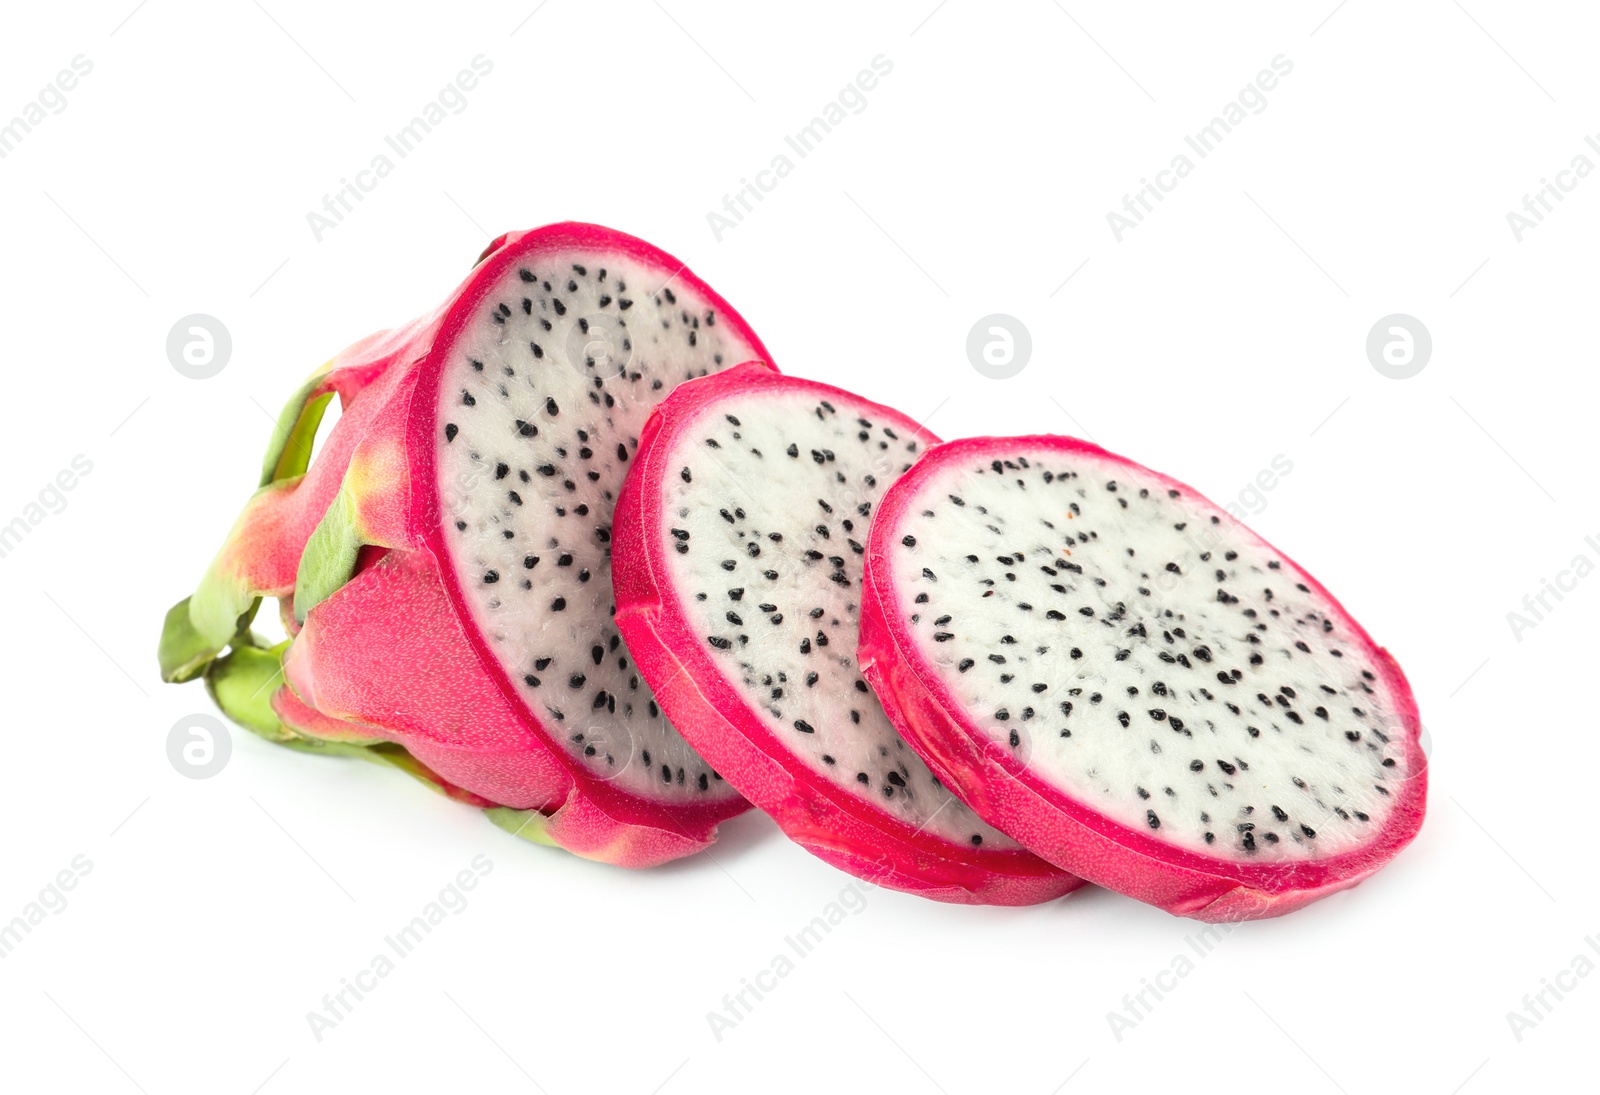 Photo of Delicious cut pitahaya fruit on white background